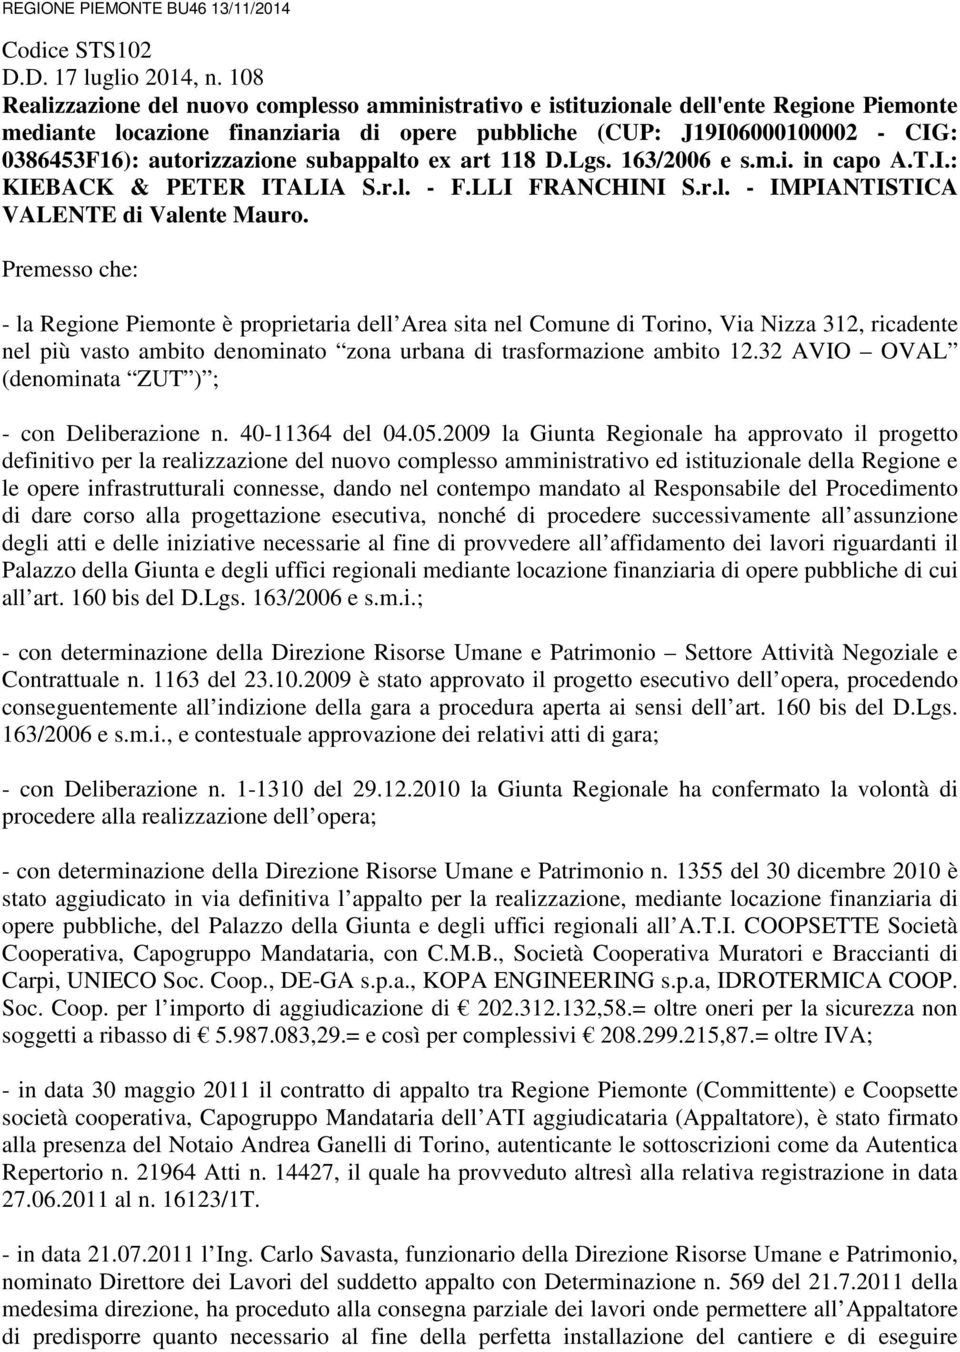 autorizzazione subappalto ex art 118 D.Lgs. 163/2006 e s.m.i. in capo A.T.I.: KIEBACK & PETER ITALIA S.r.l. - F.LLI FRANCHINI S.r.l. - IMPIANTISTICA VALENTE di Valente Mauro.